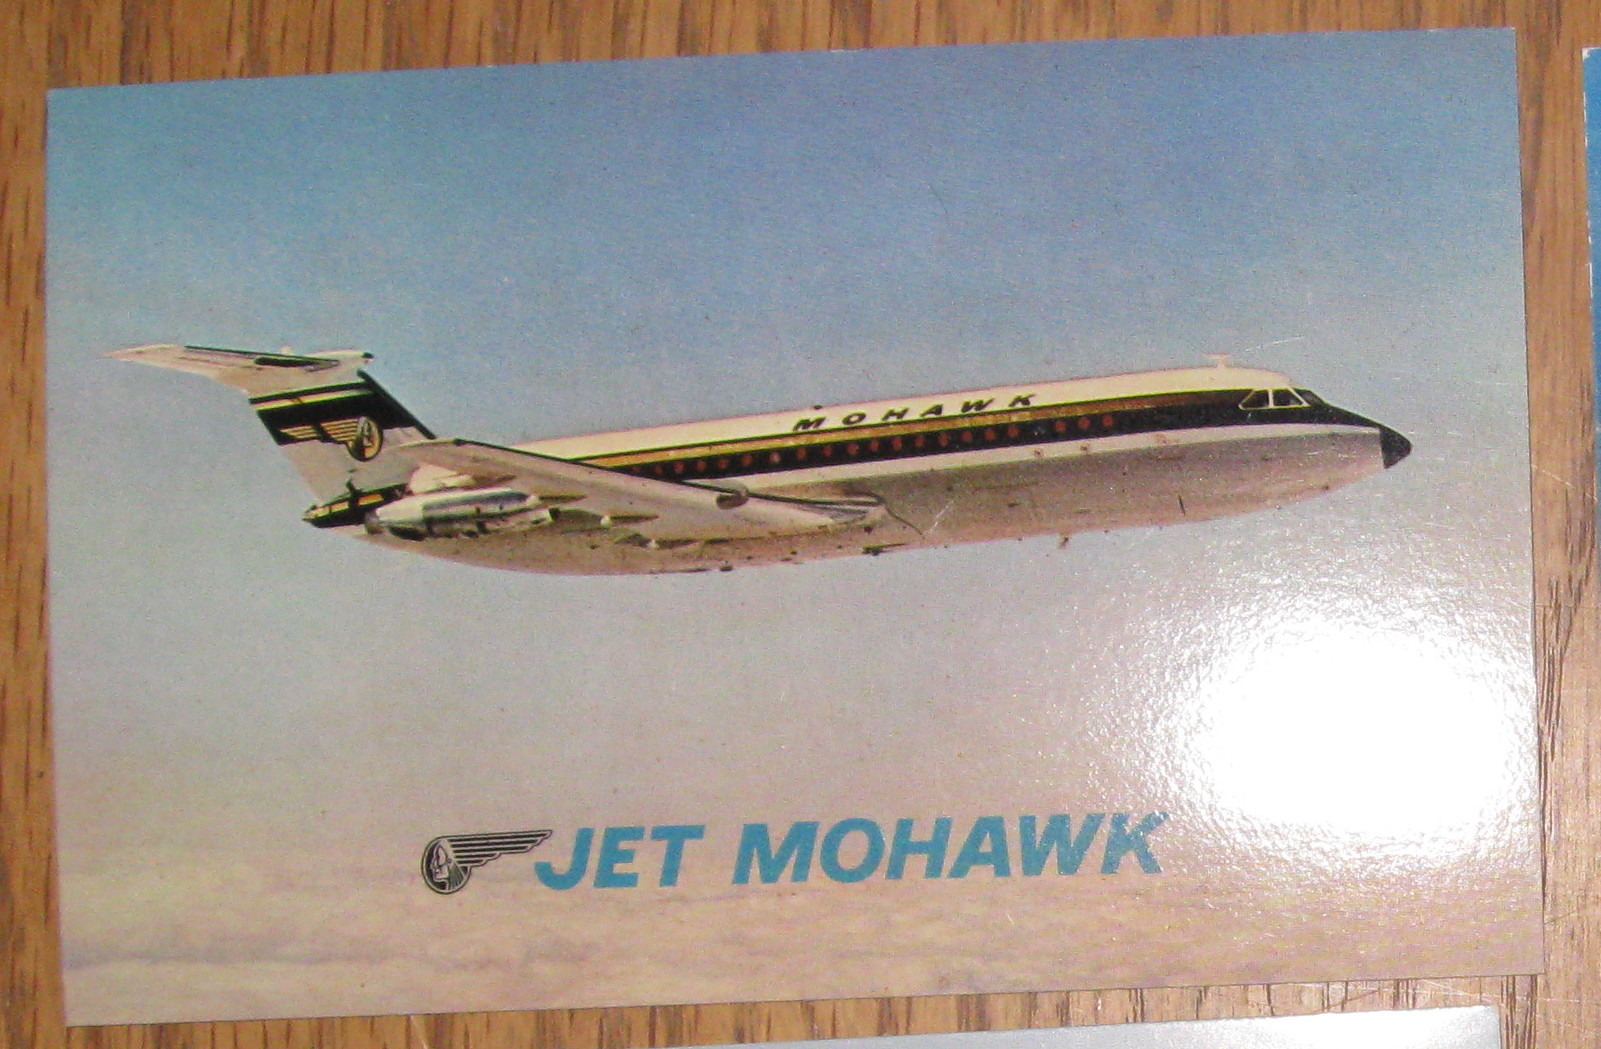 Mohawk's one-eleven fan jet